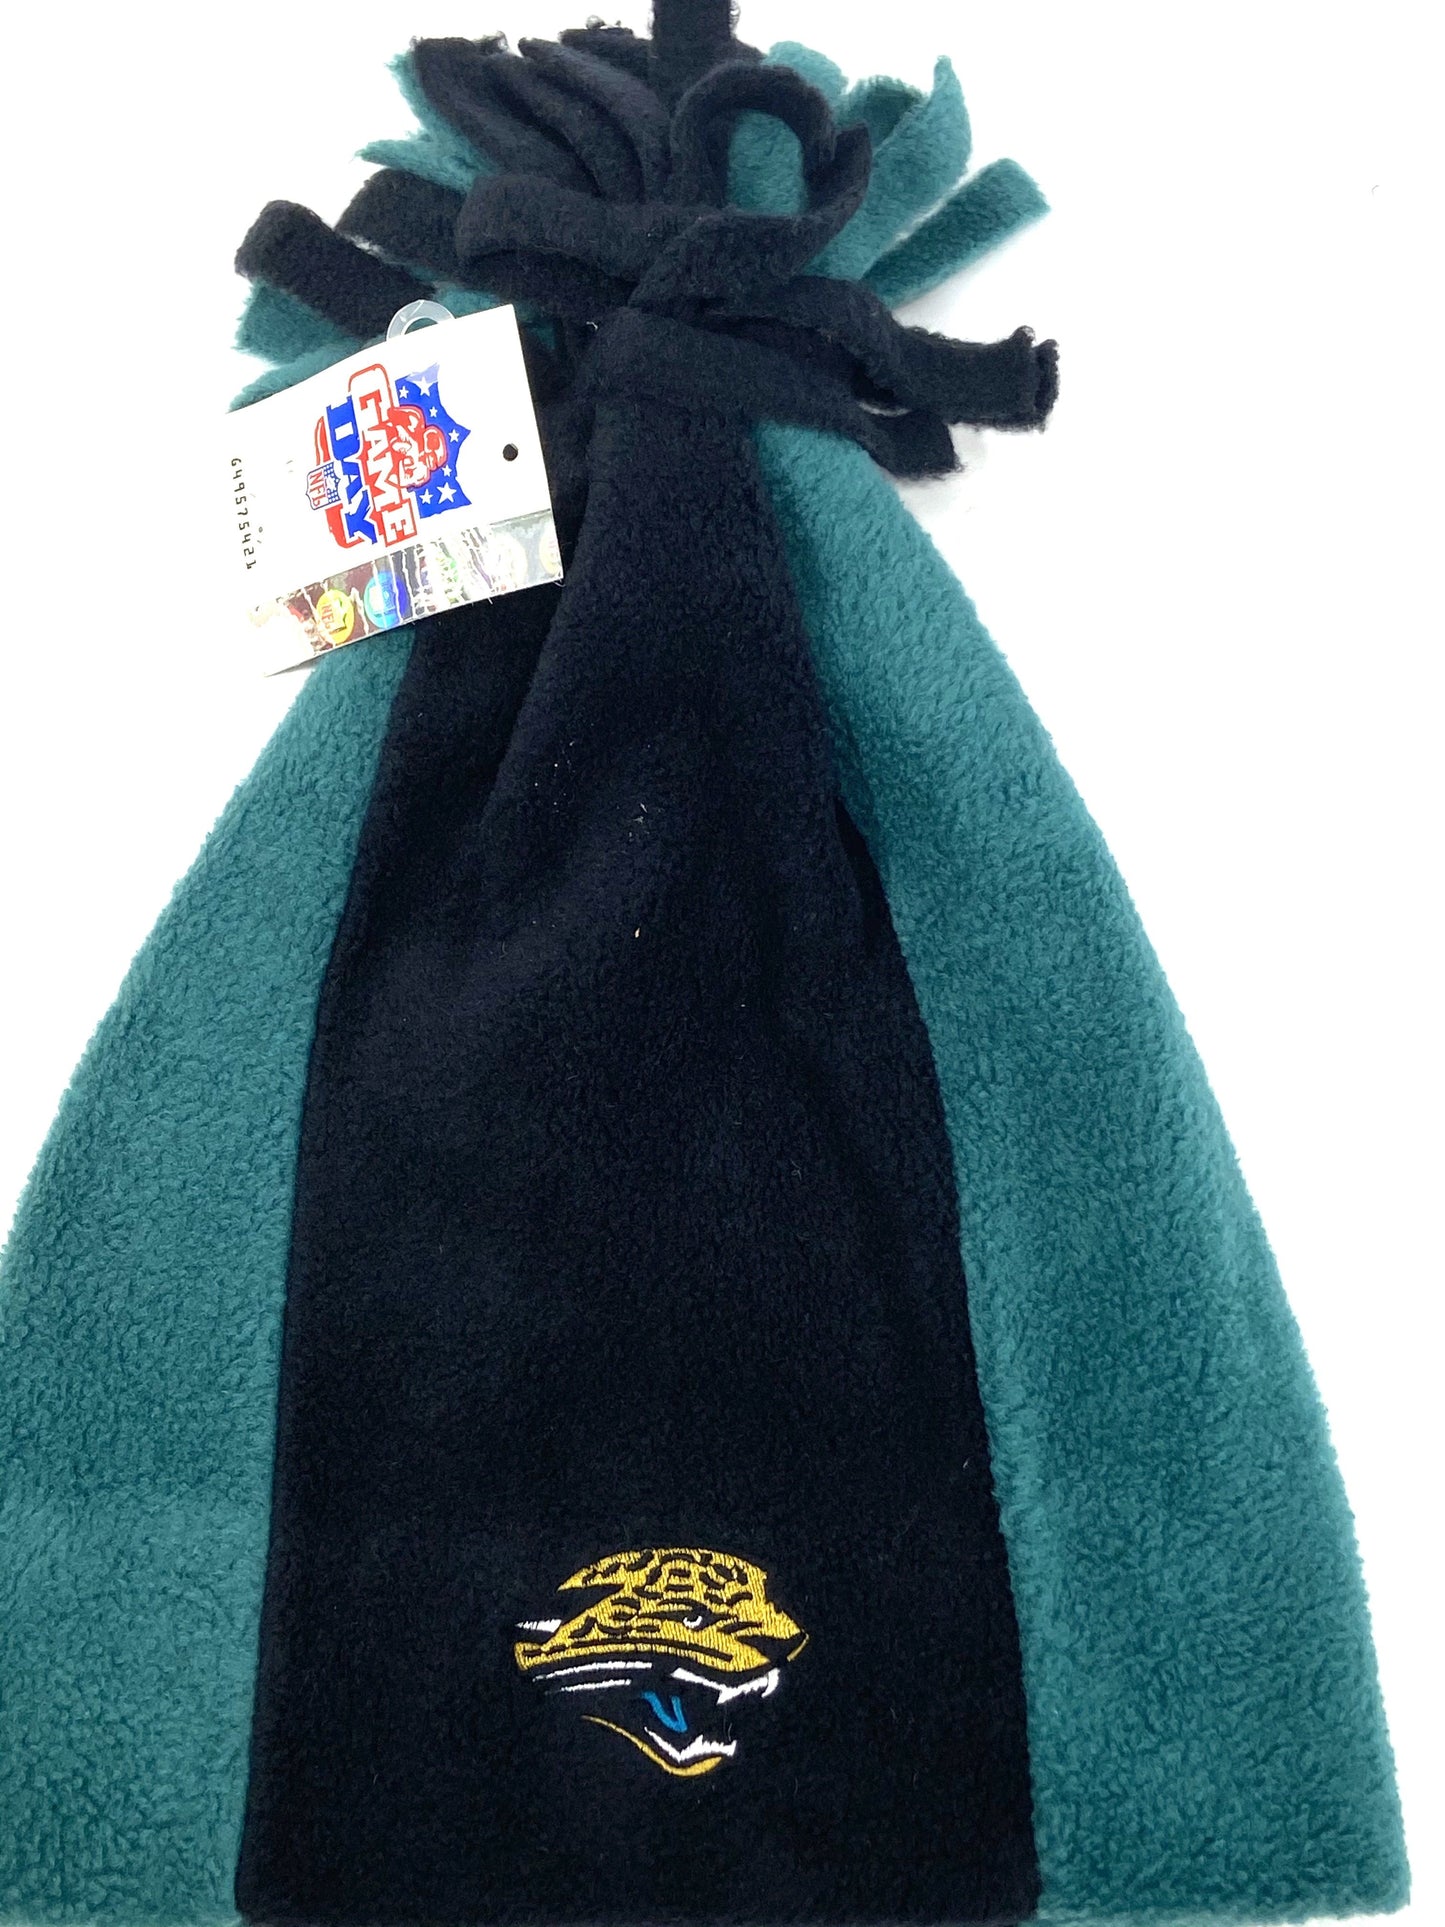 Jacksonville Jaguars Vintage NFL Green Cuffless Fleece NOS Tassel Hat by Drew Pearson Marketing